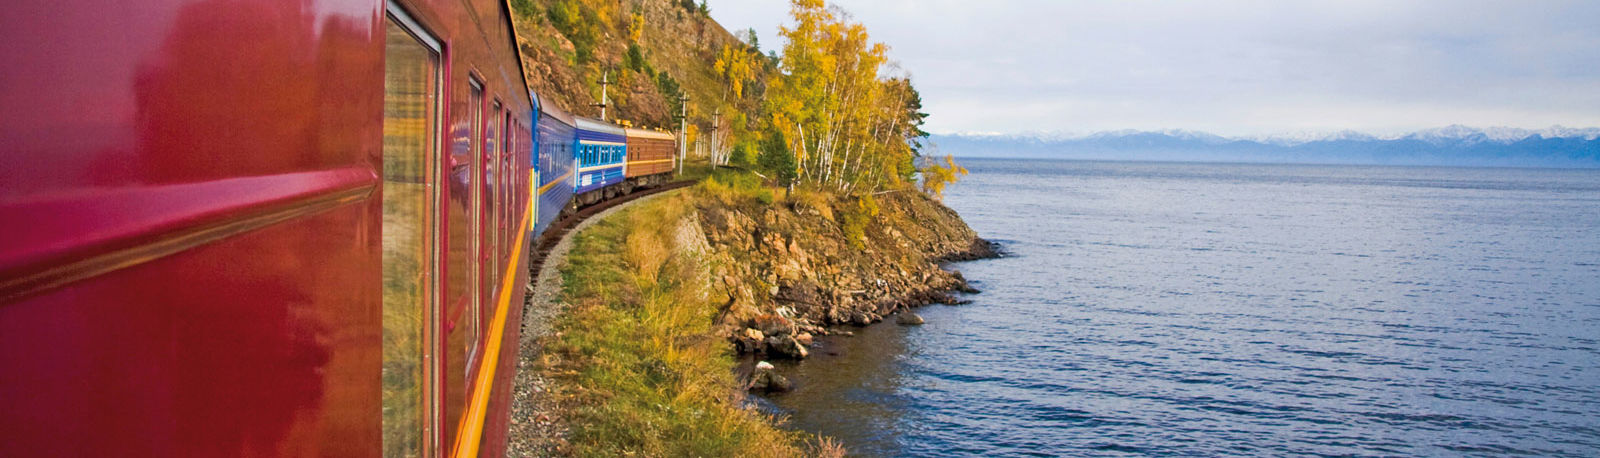 Zarengold Zug am Baikalsee